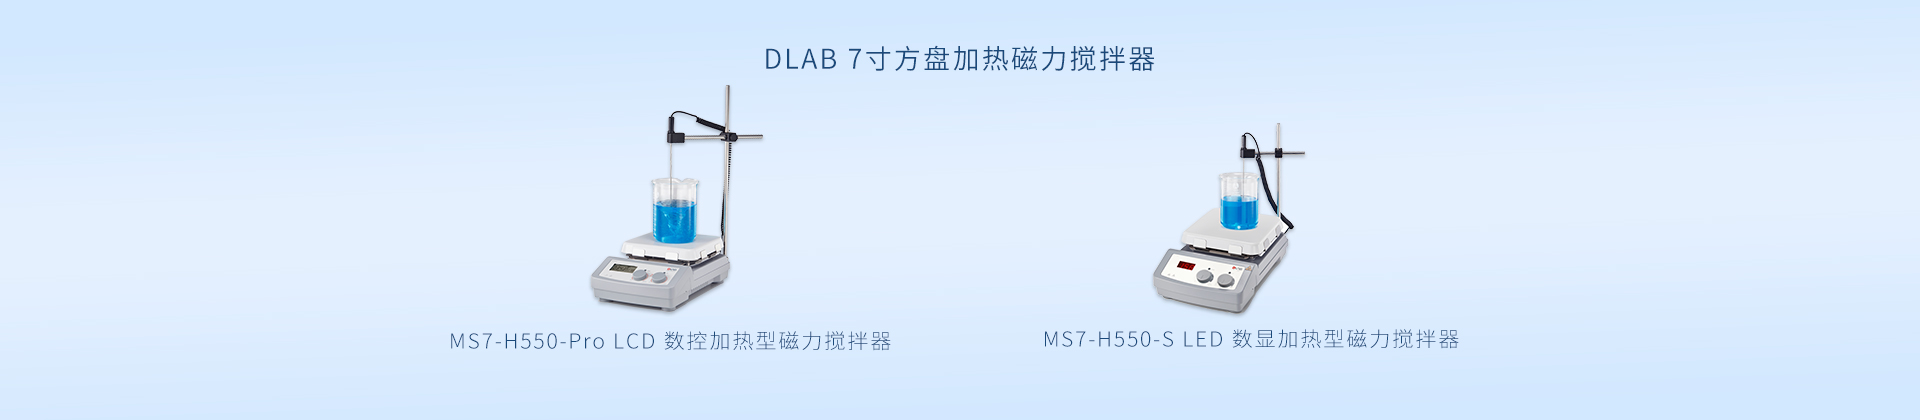 DLAB 7寸方盘加热磁力搅拌器